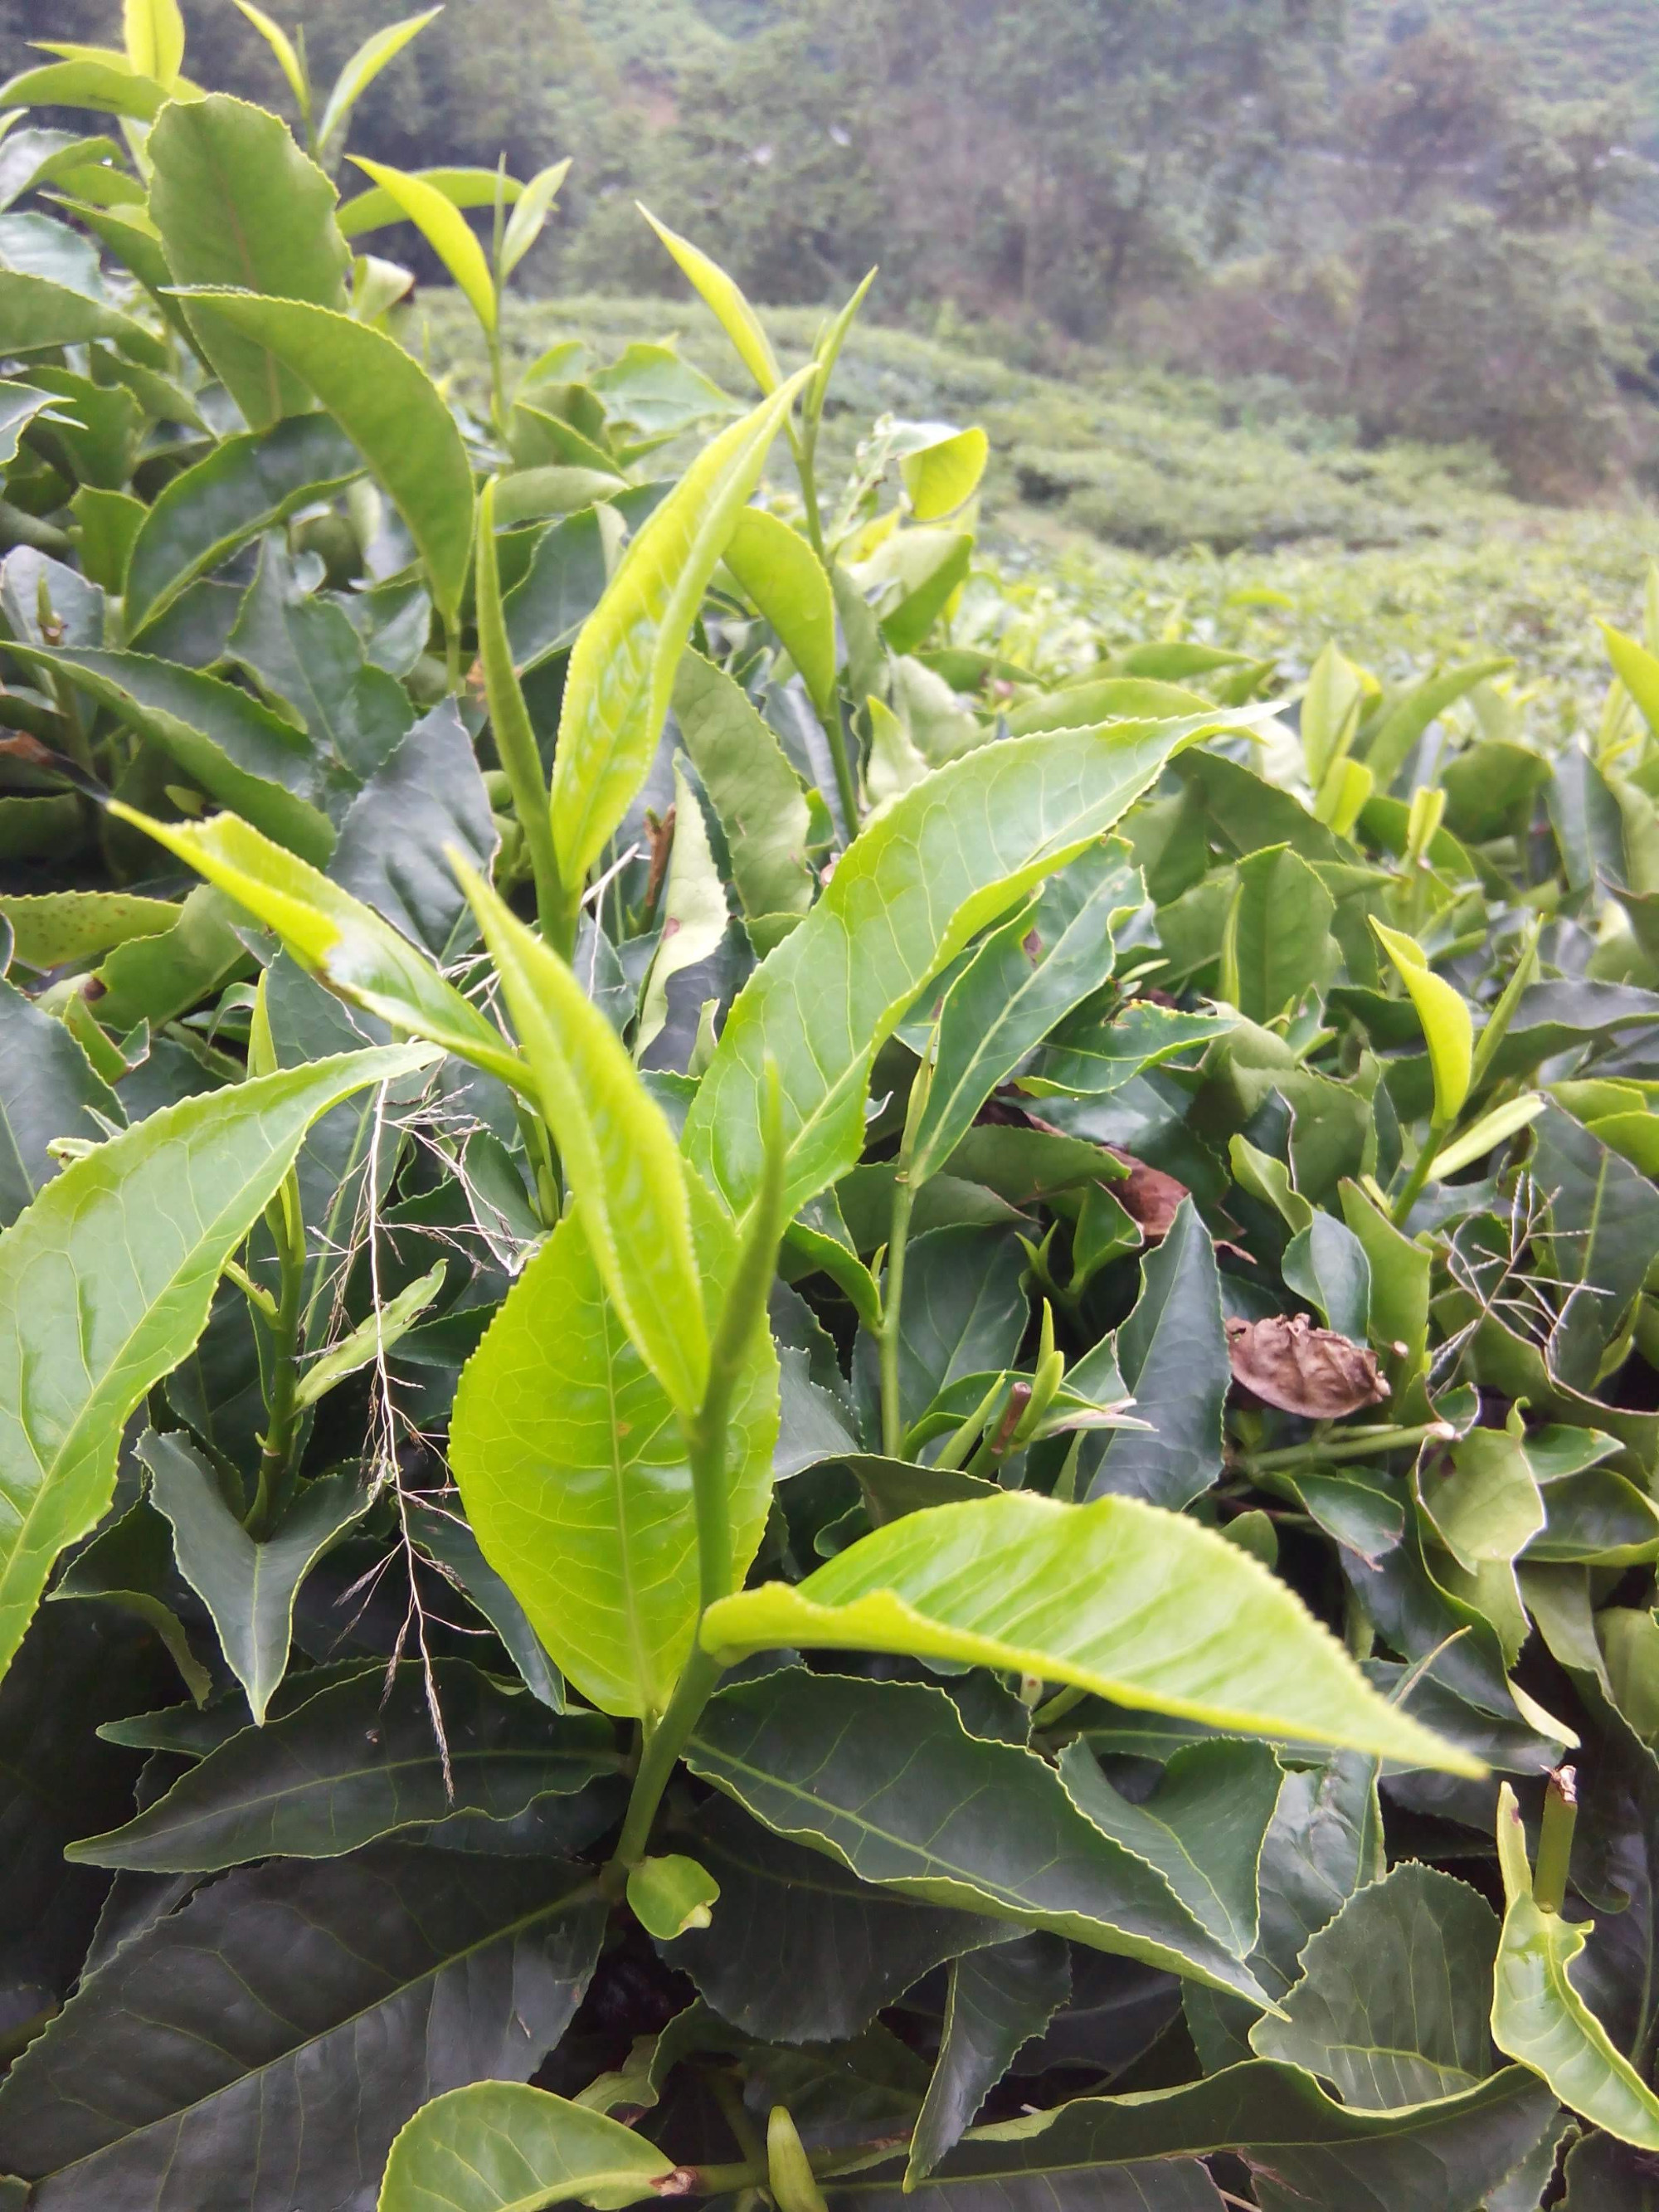 Tea plantation / Tanah Rata, Malaysia